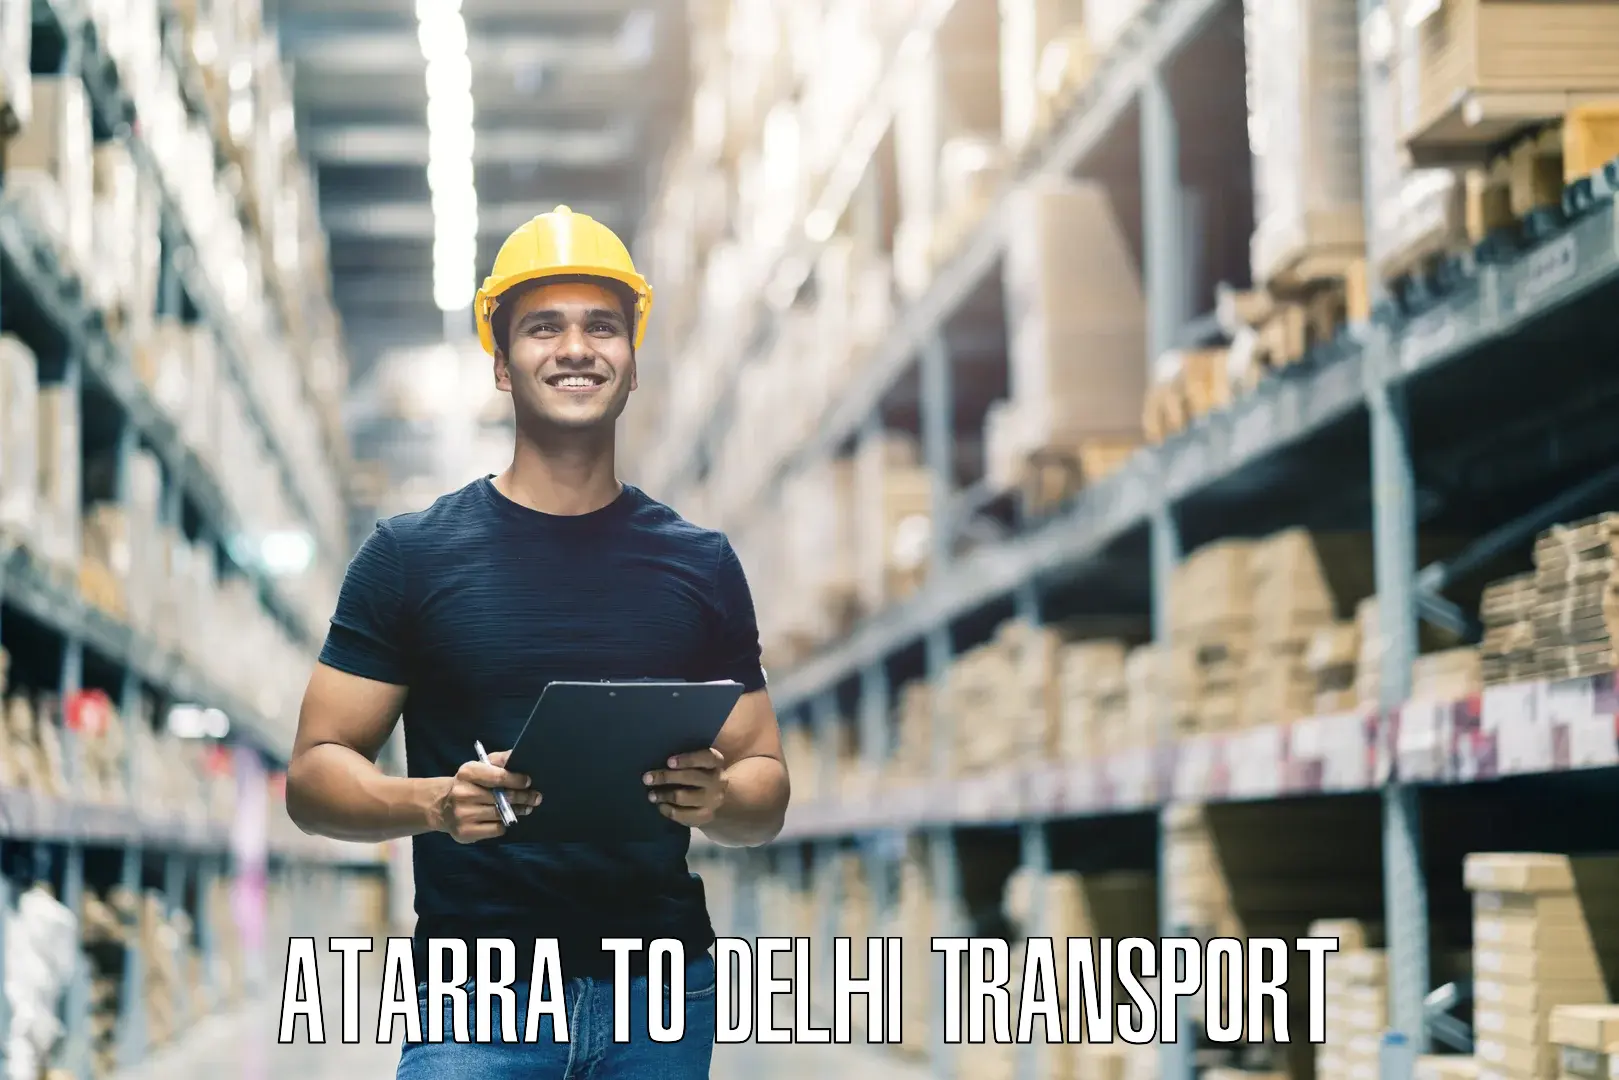 Parcel transport services Atarra to Delhi